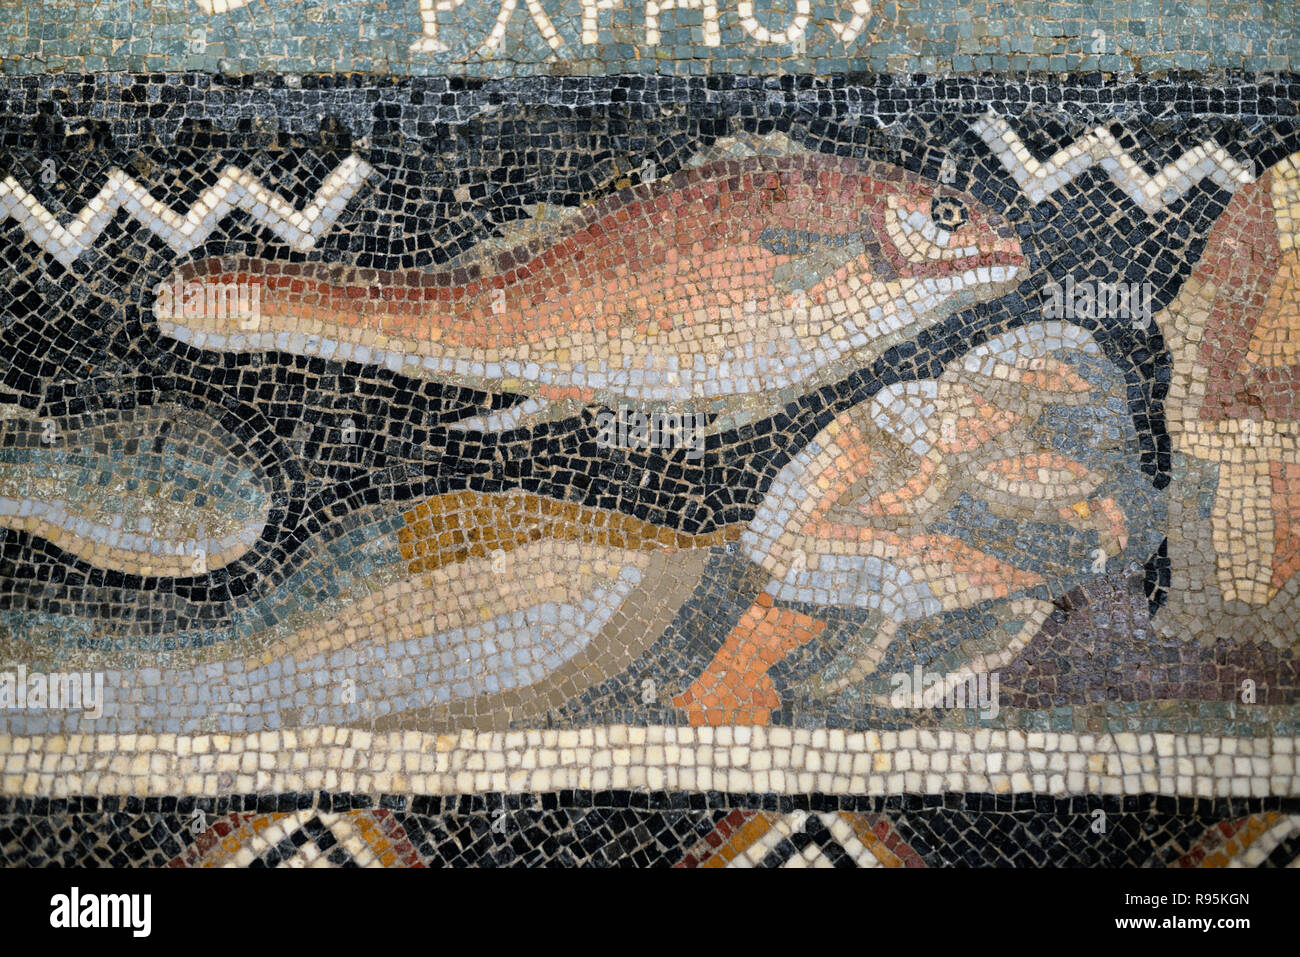 Dettaglio del pavimento romano mosaico (C3rd-c4th) di pesce sul fondale del Mediterraneo dalla antica città romana di Ammaedara Haidra in Tunisia Foto Stock